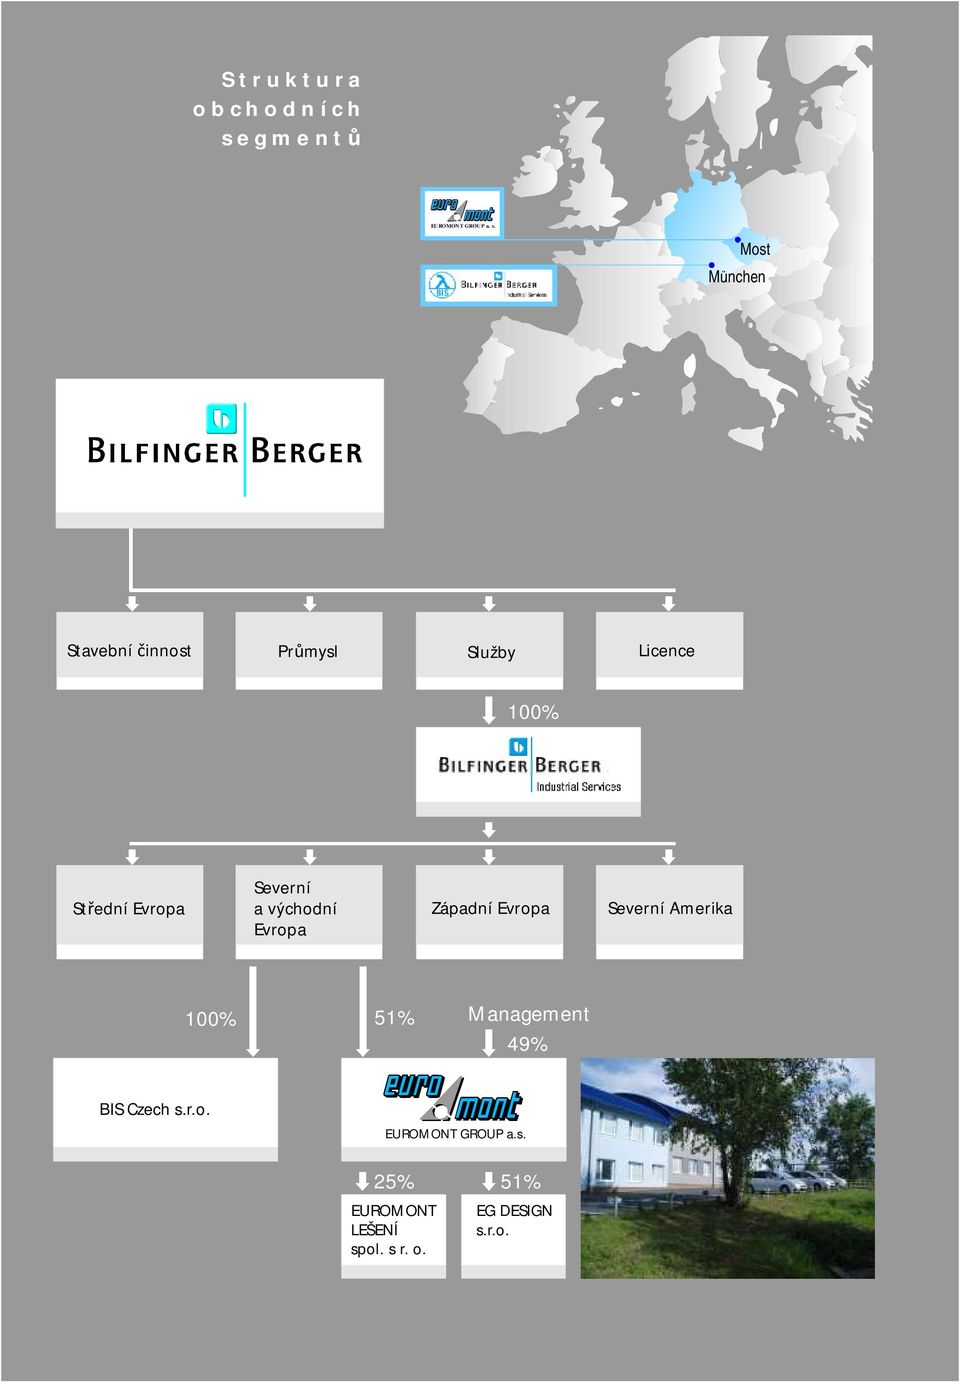 Most Munchen Stavební činnost Průmysl Služby Licence 100% Střední Evropa